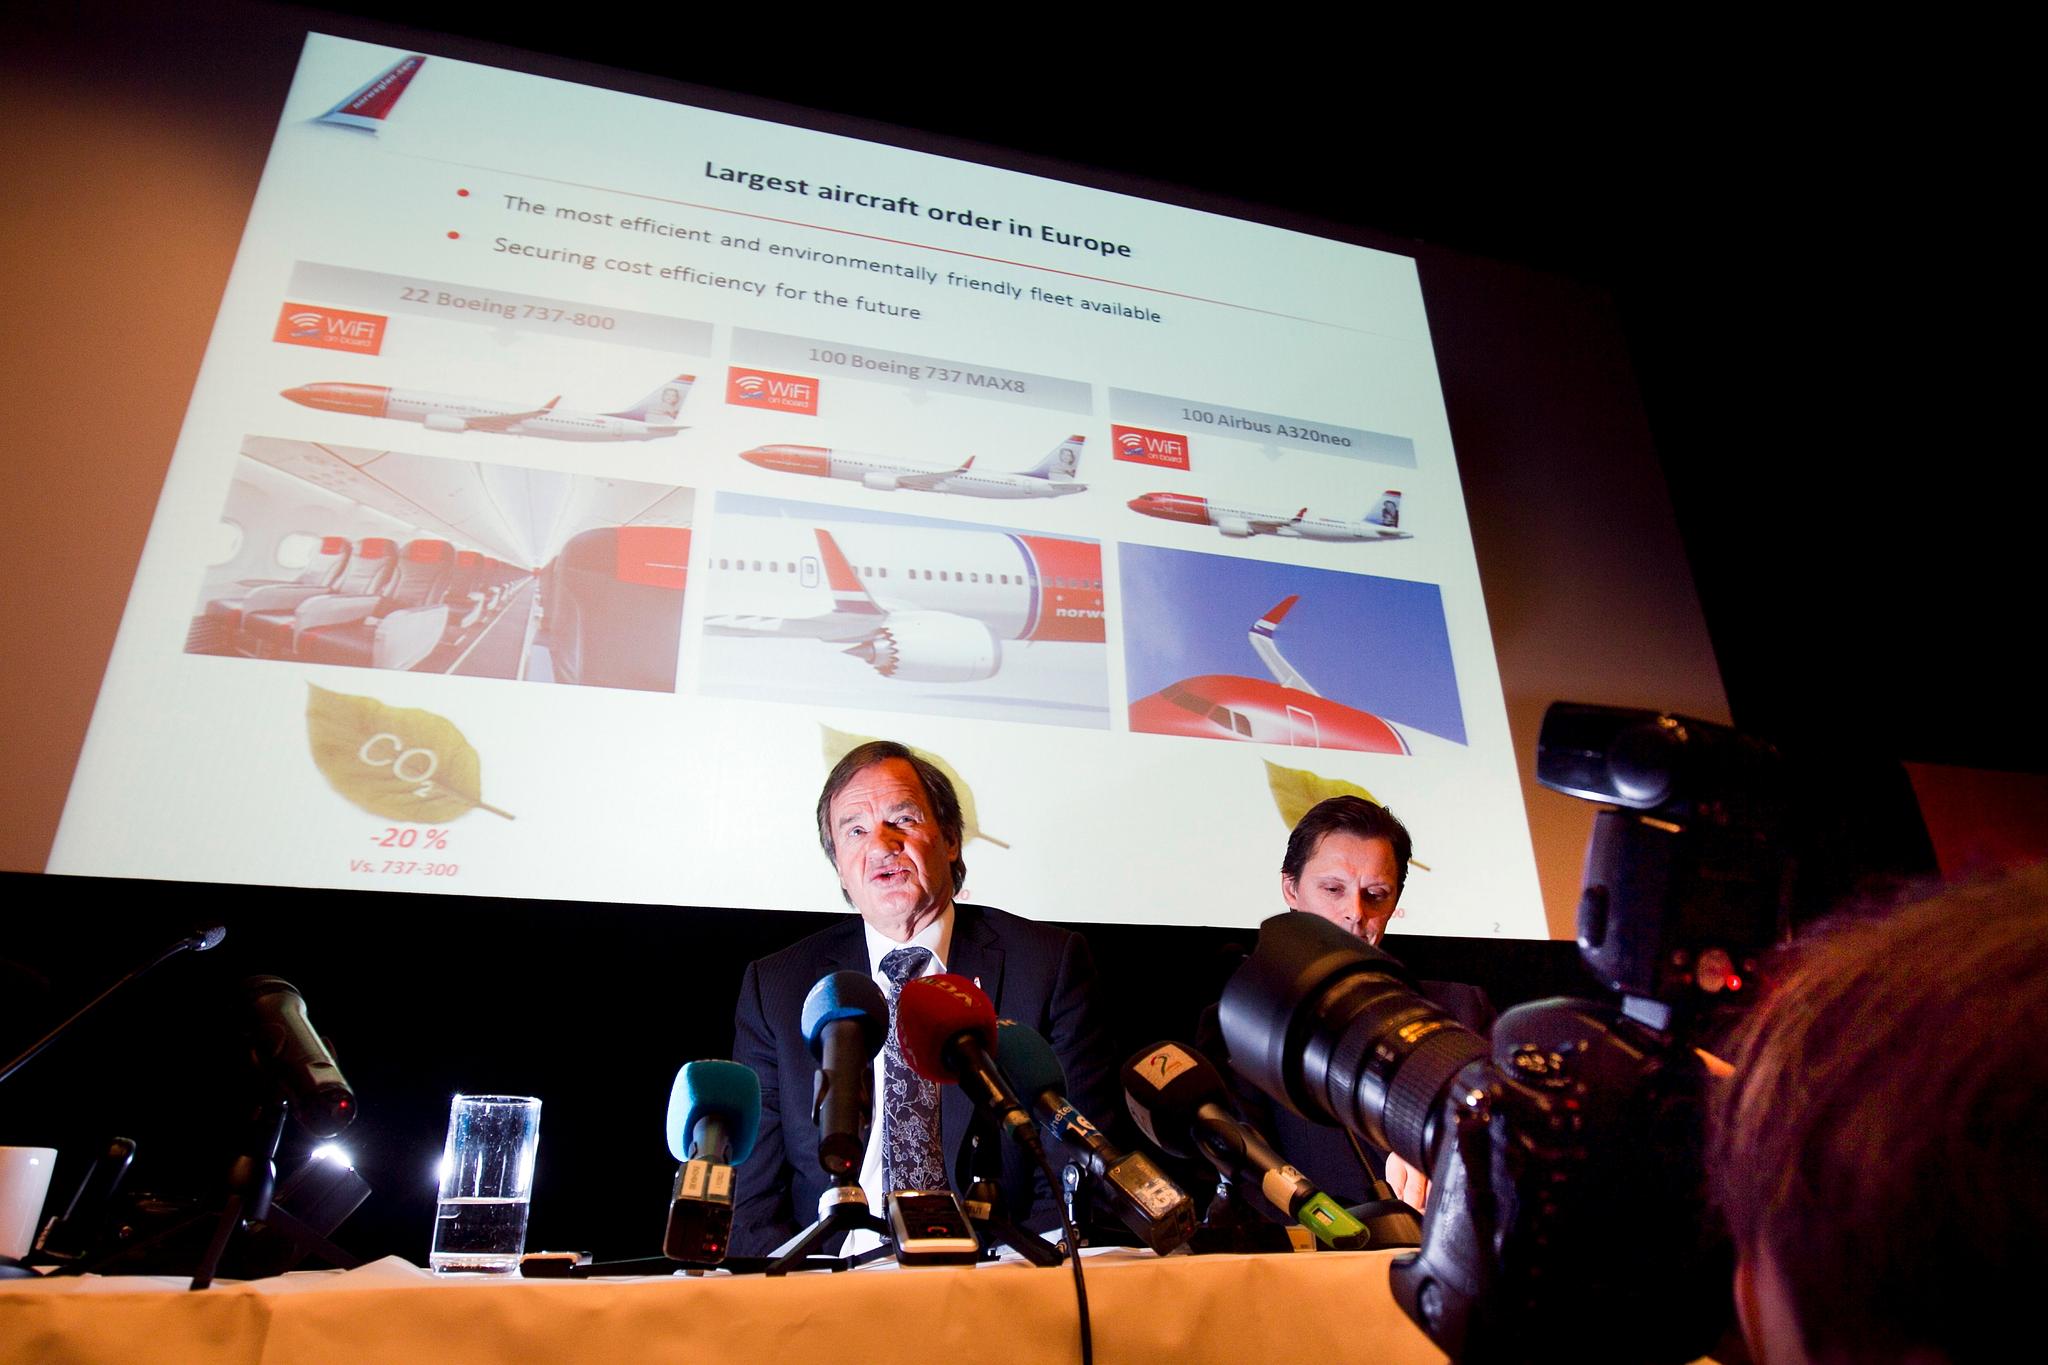 I 2012 ble det klart at Norwegian hadde bestilt 222 fly til en verdi av 127 milliarder kroner fra produsentene Boeing og Airbus. Dette ble beskrevet som Europas største flybestilling gjennom tidene.